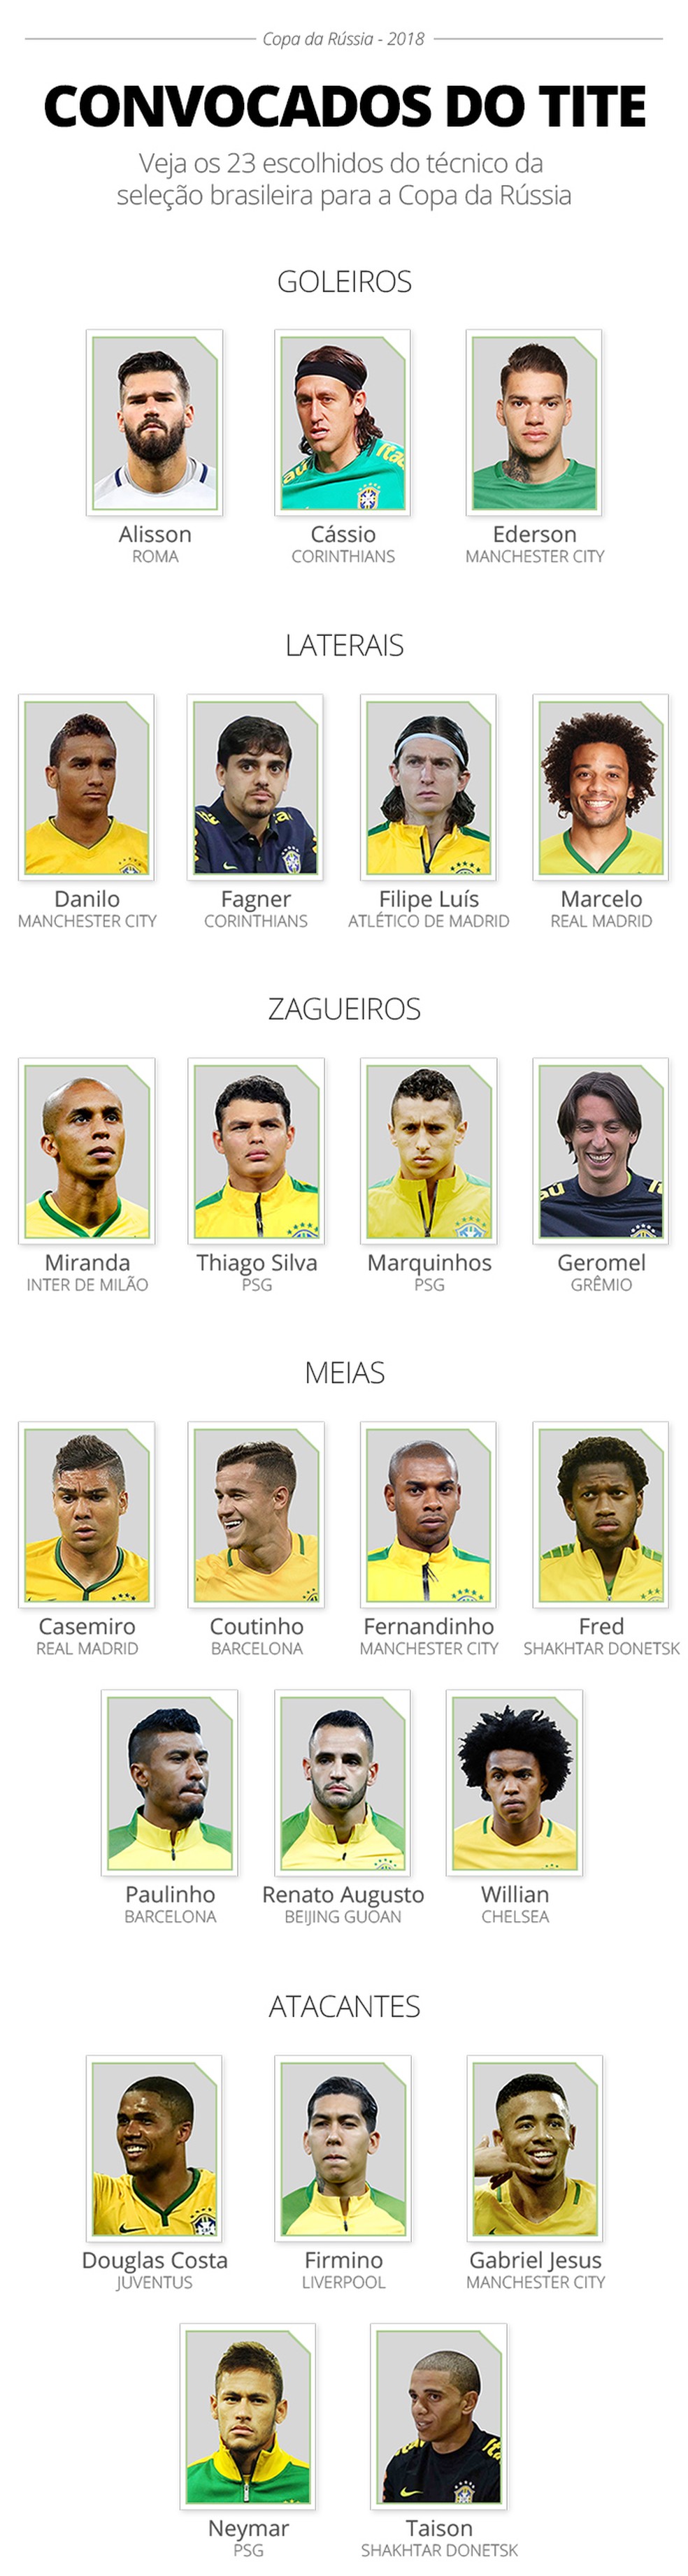 Veja os clubes com mais convocados para a Seleção Brasileira em